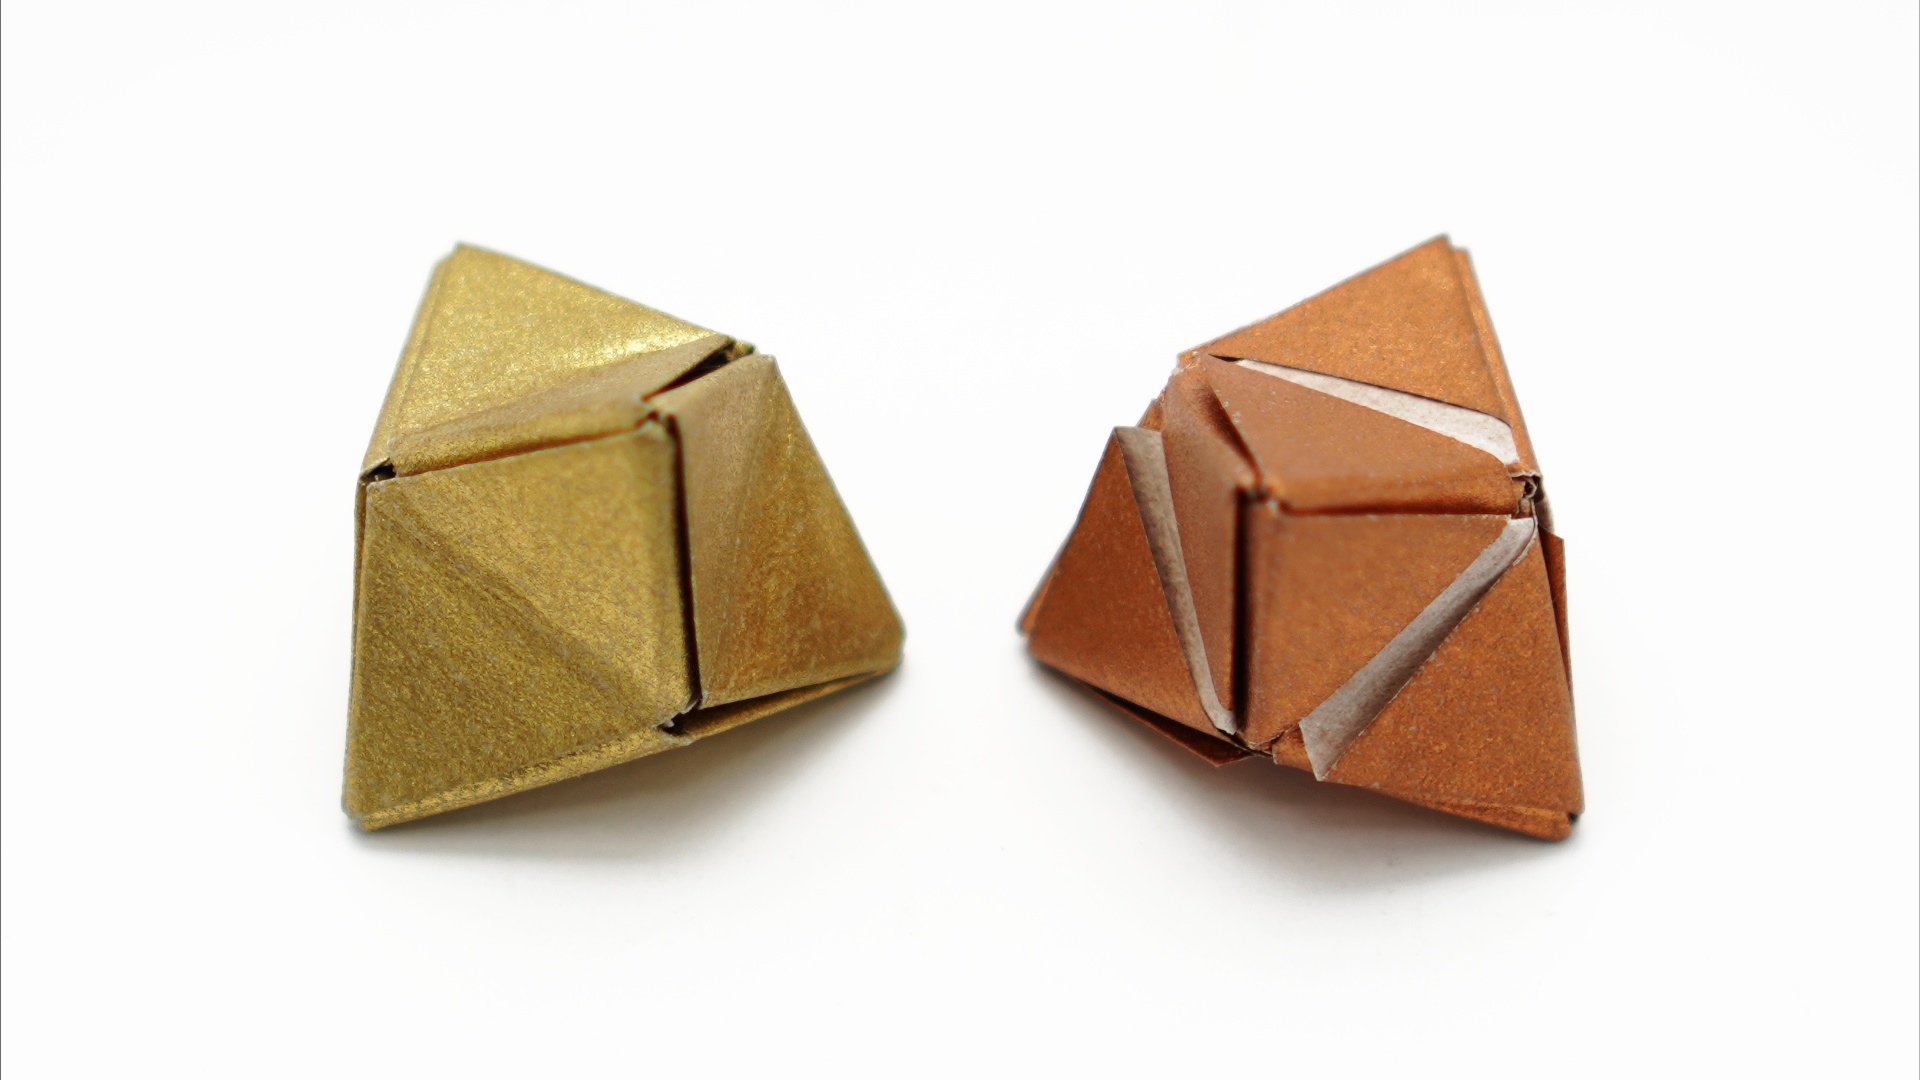 Origami Triakis Tetrahedron